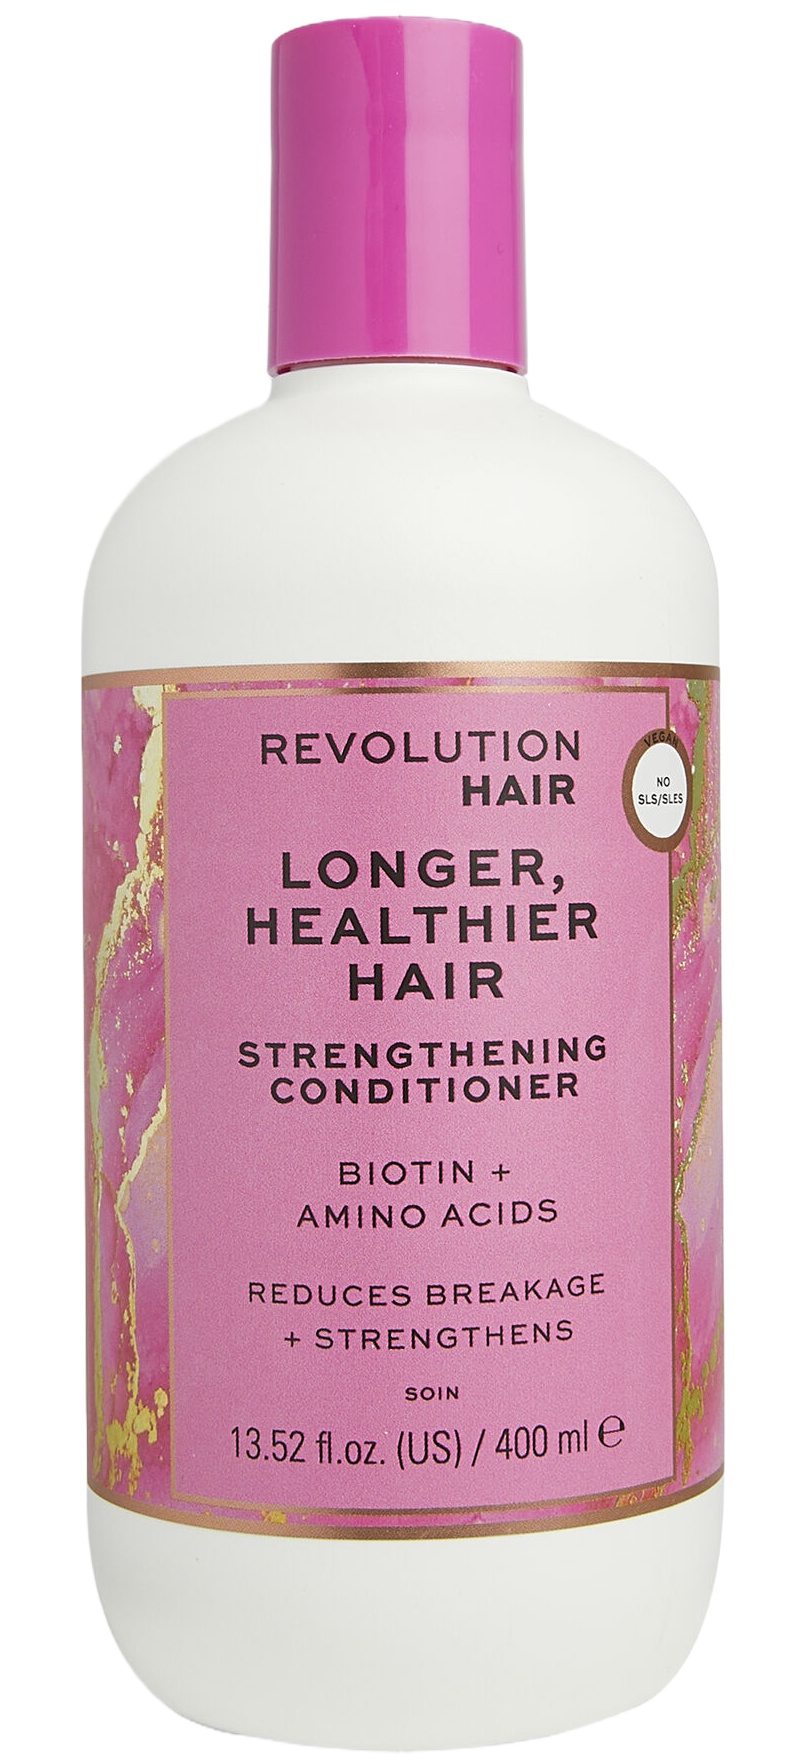 Revolution Haircare Longer Healthier Hair Strengthening Conditioner